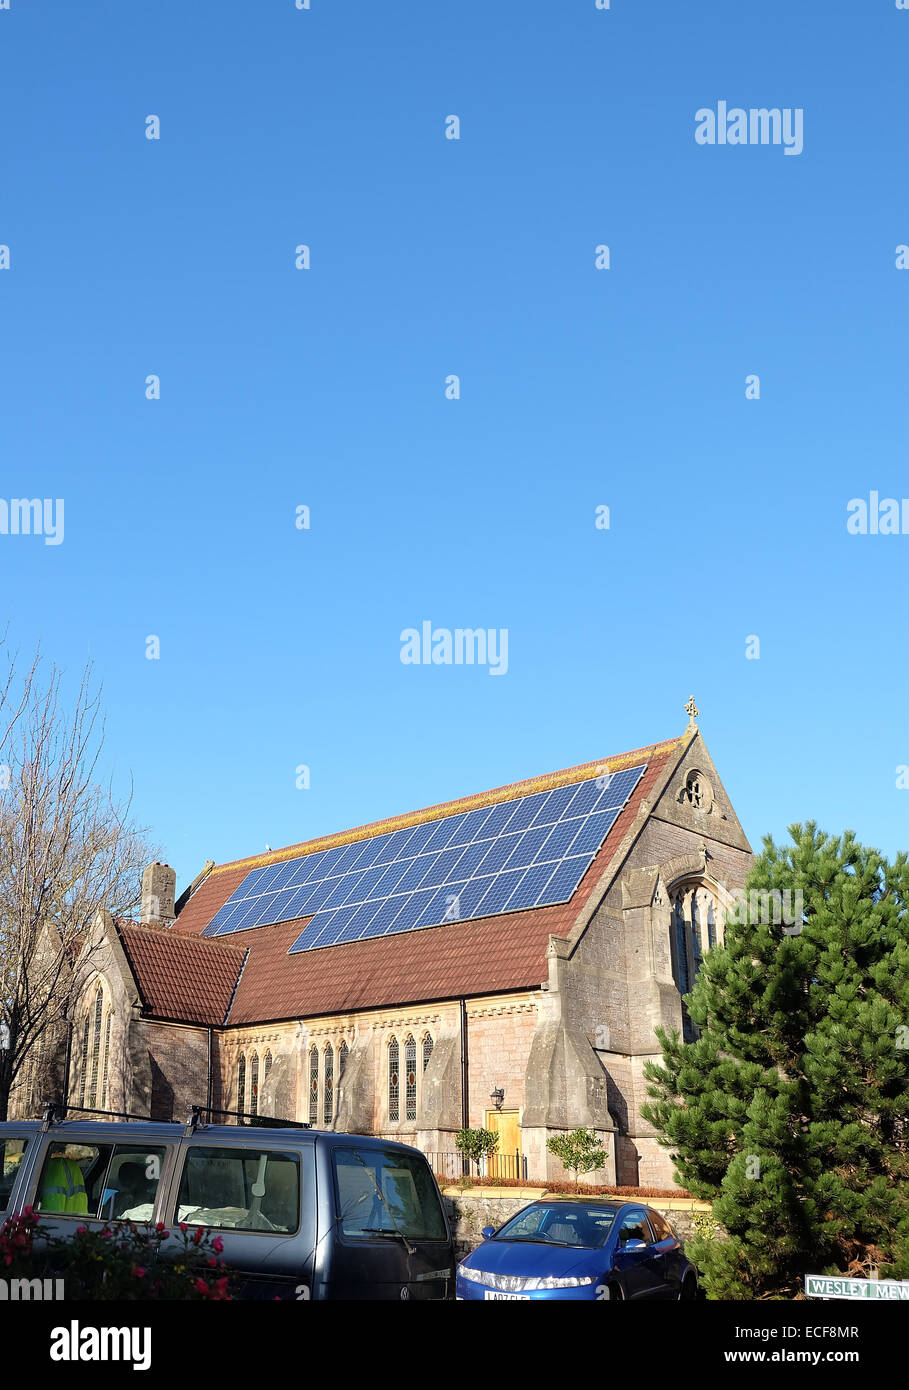 Des panneaux solaires sur le toit de l'Église Méthodiste de Cheddar, montrant une sensibilisation à l'environnement vert. 13 Décembre 2014 Banque D'Images